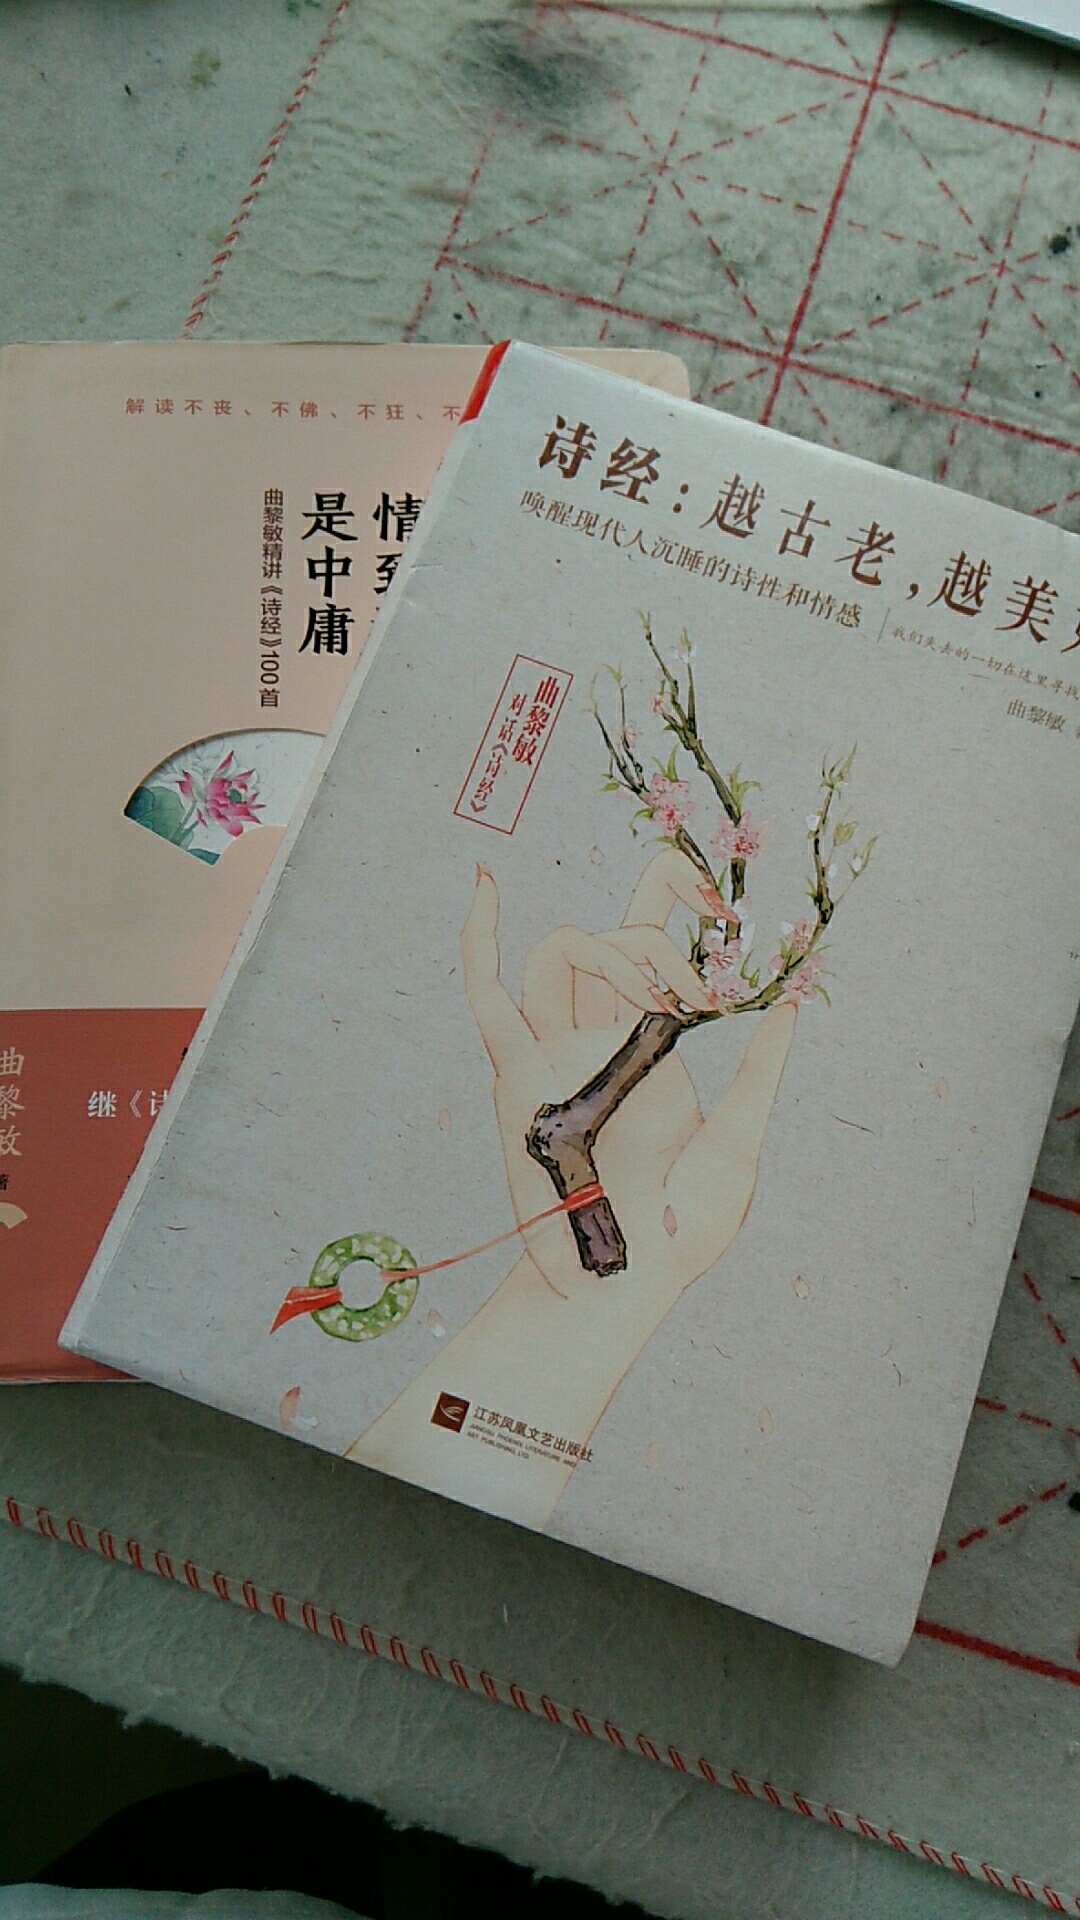 中华民族是被诗经礼教浸润的民族，每个人都向往诗意，礼遇文字，如作者，如看到此书的我们。